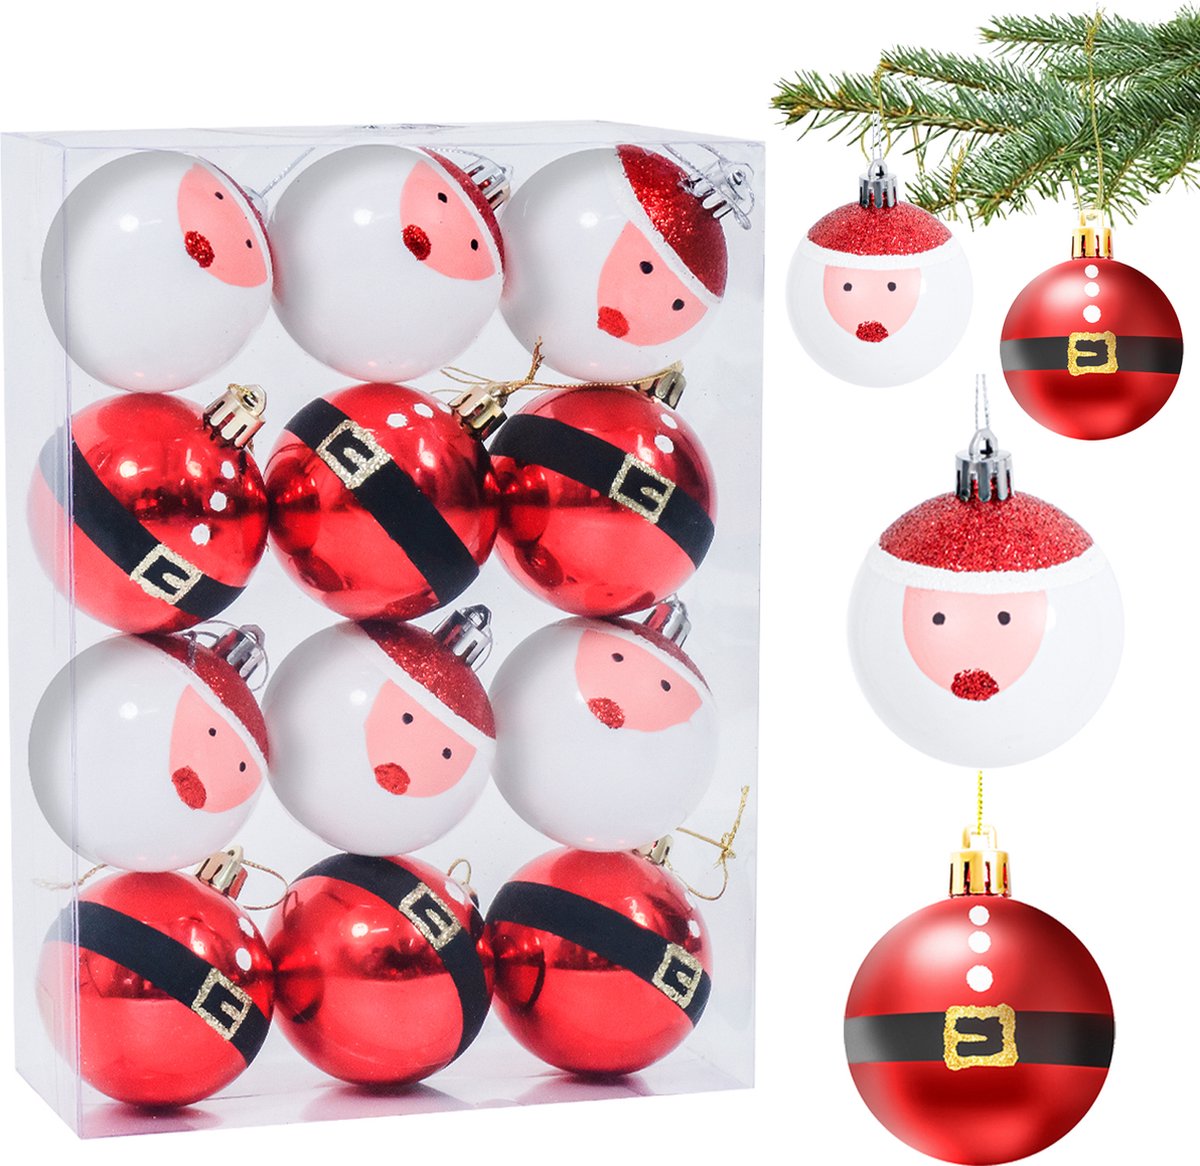 Uten - Kerstballen Plastic - kerstboom versiering - Christmas Gifts - kerstballen set - 12 stuks - kerstboom ballen - Ø6cm - wit/rood